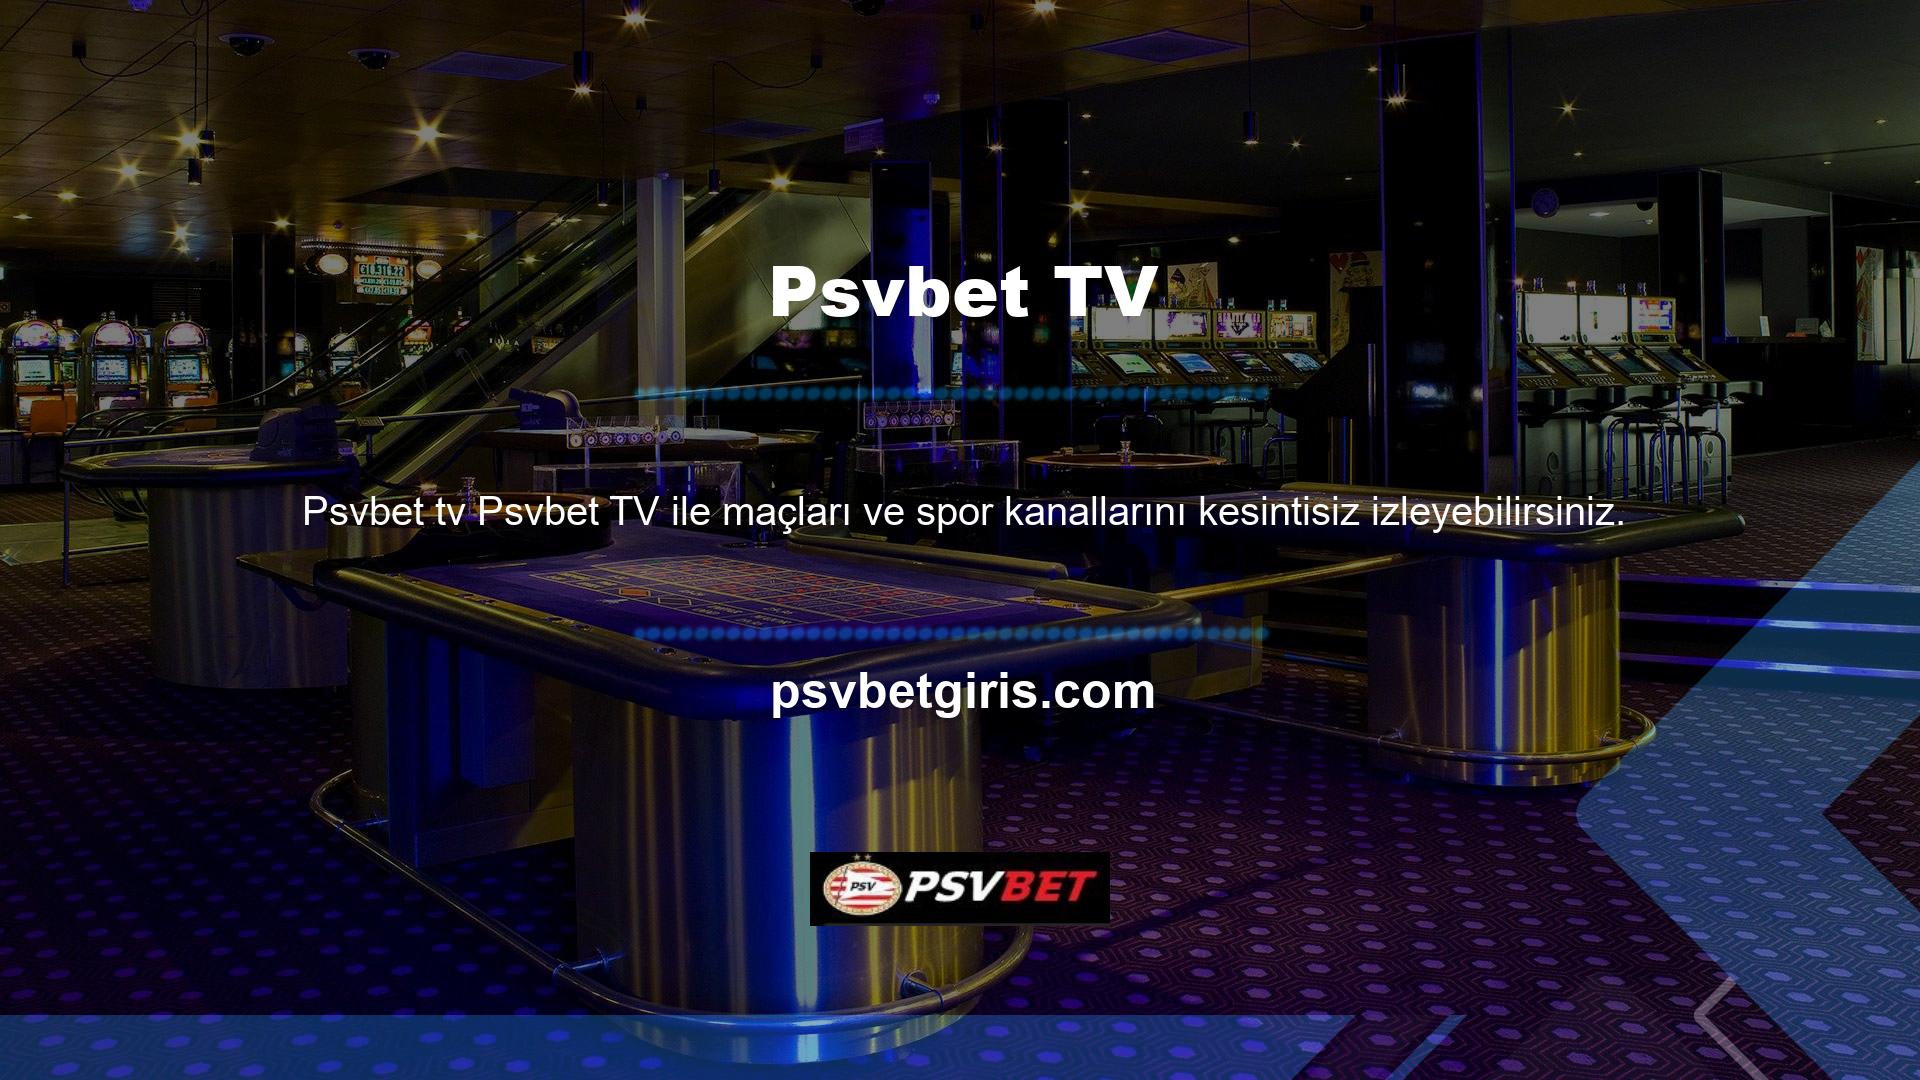 Psvbet TV'nin düzenli spor kanalları internet sitesinde mevcuttur